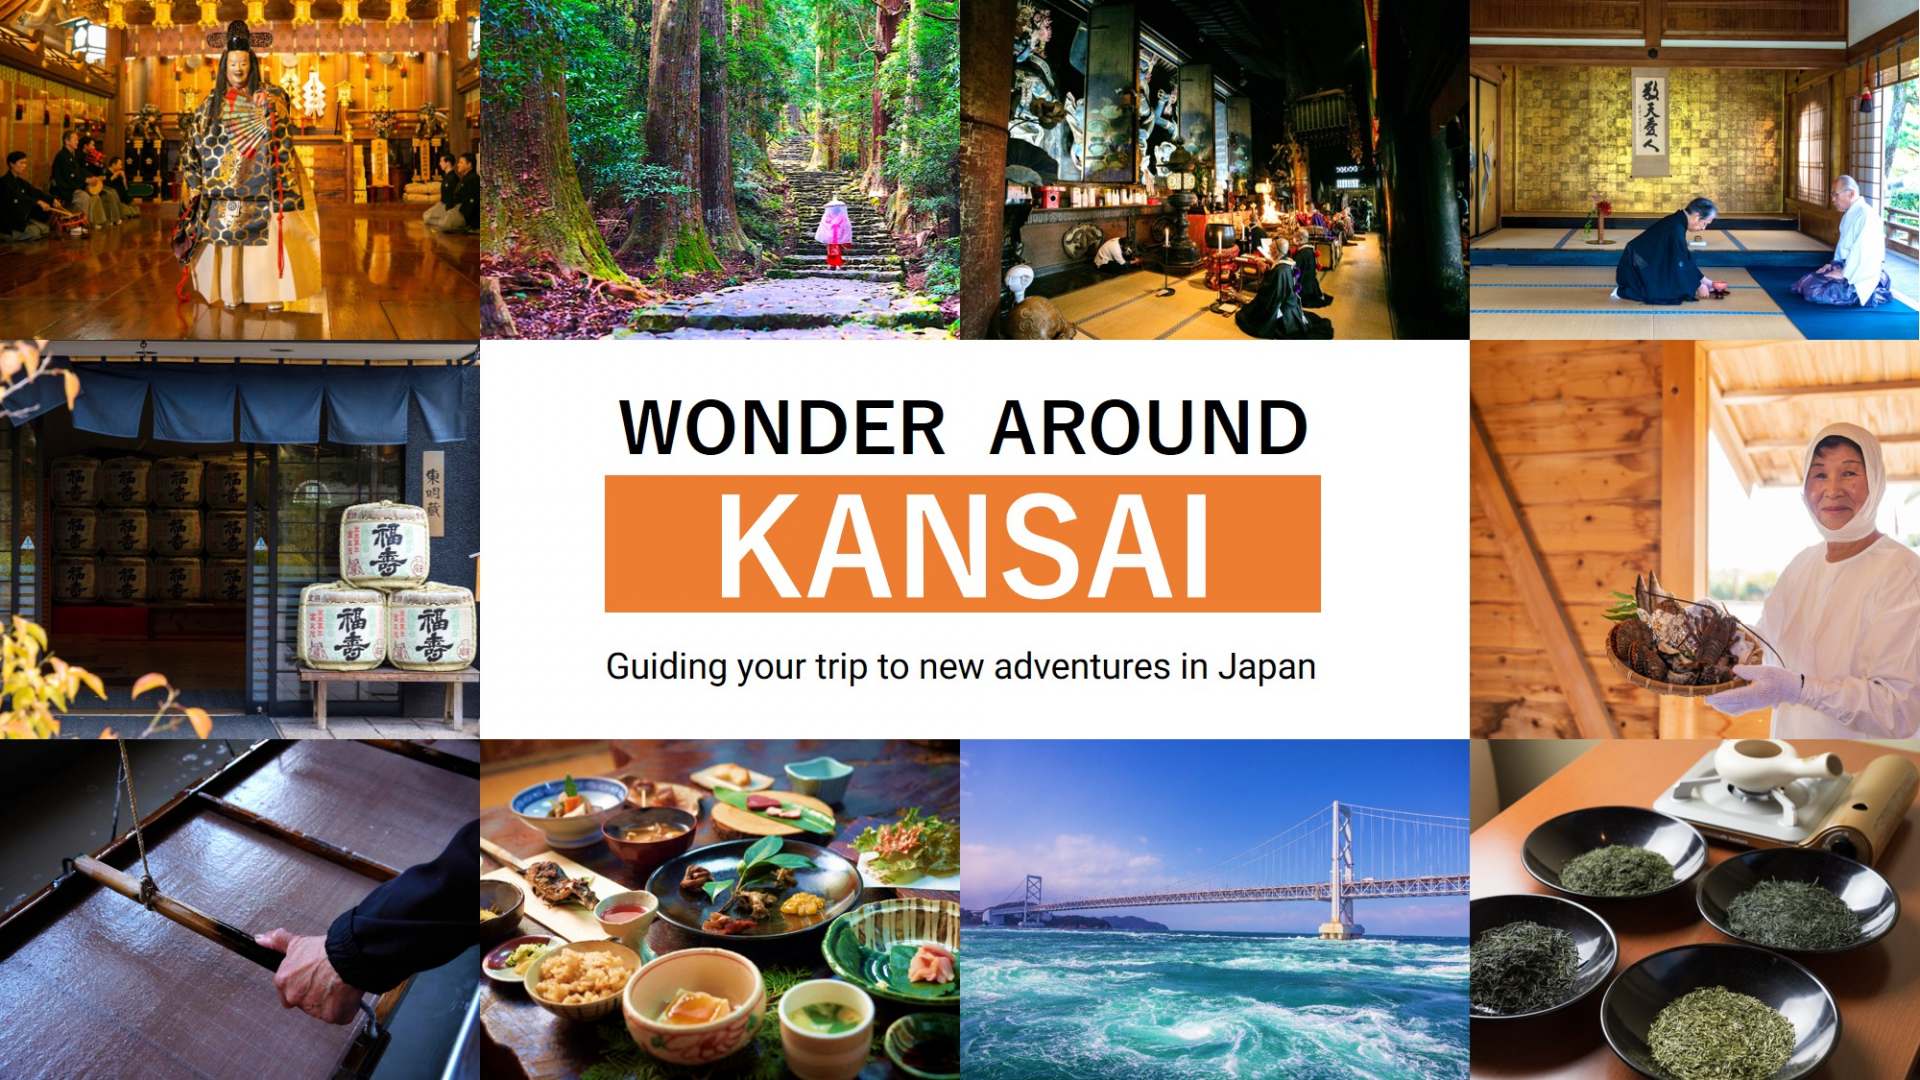 El sitio especial "WONDER AROUND KANSAI" lleno de ideas de itinerarios especiales aquí en Kansai ya está disponible.